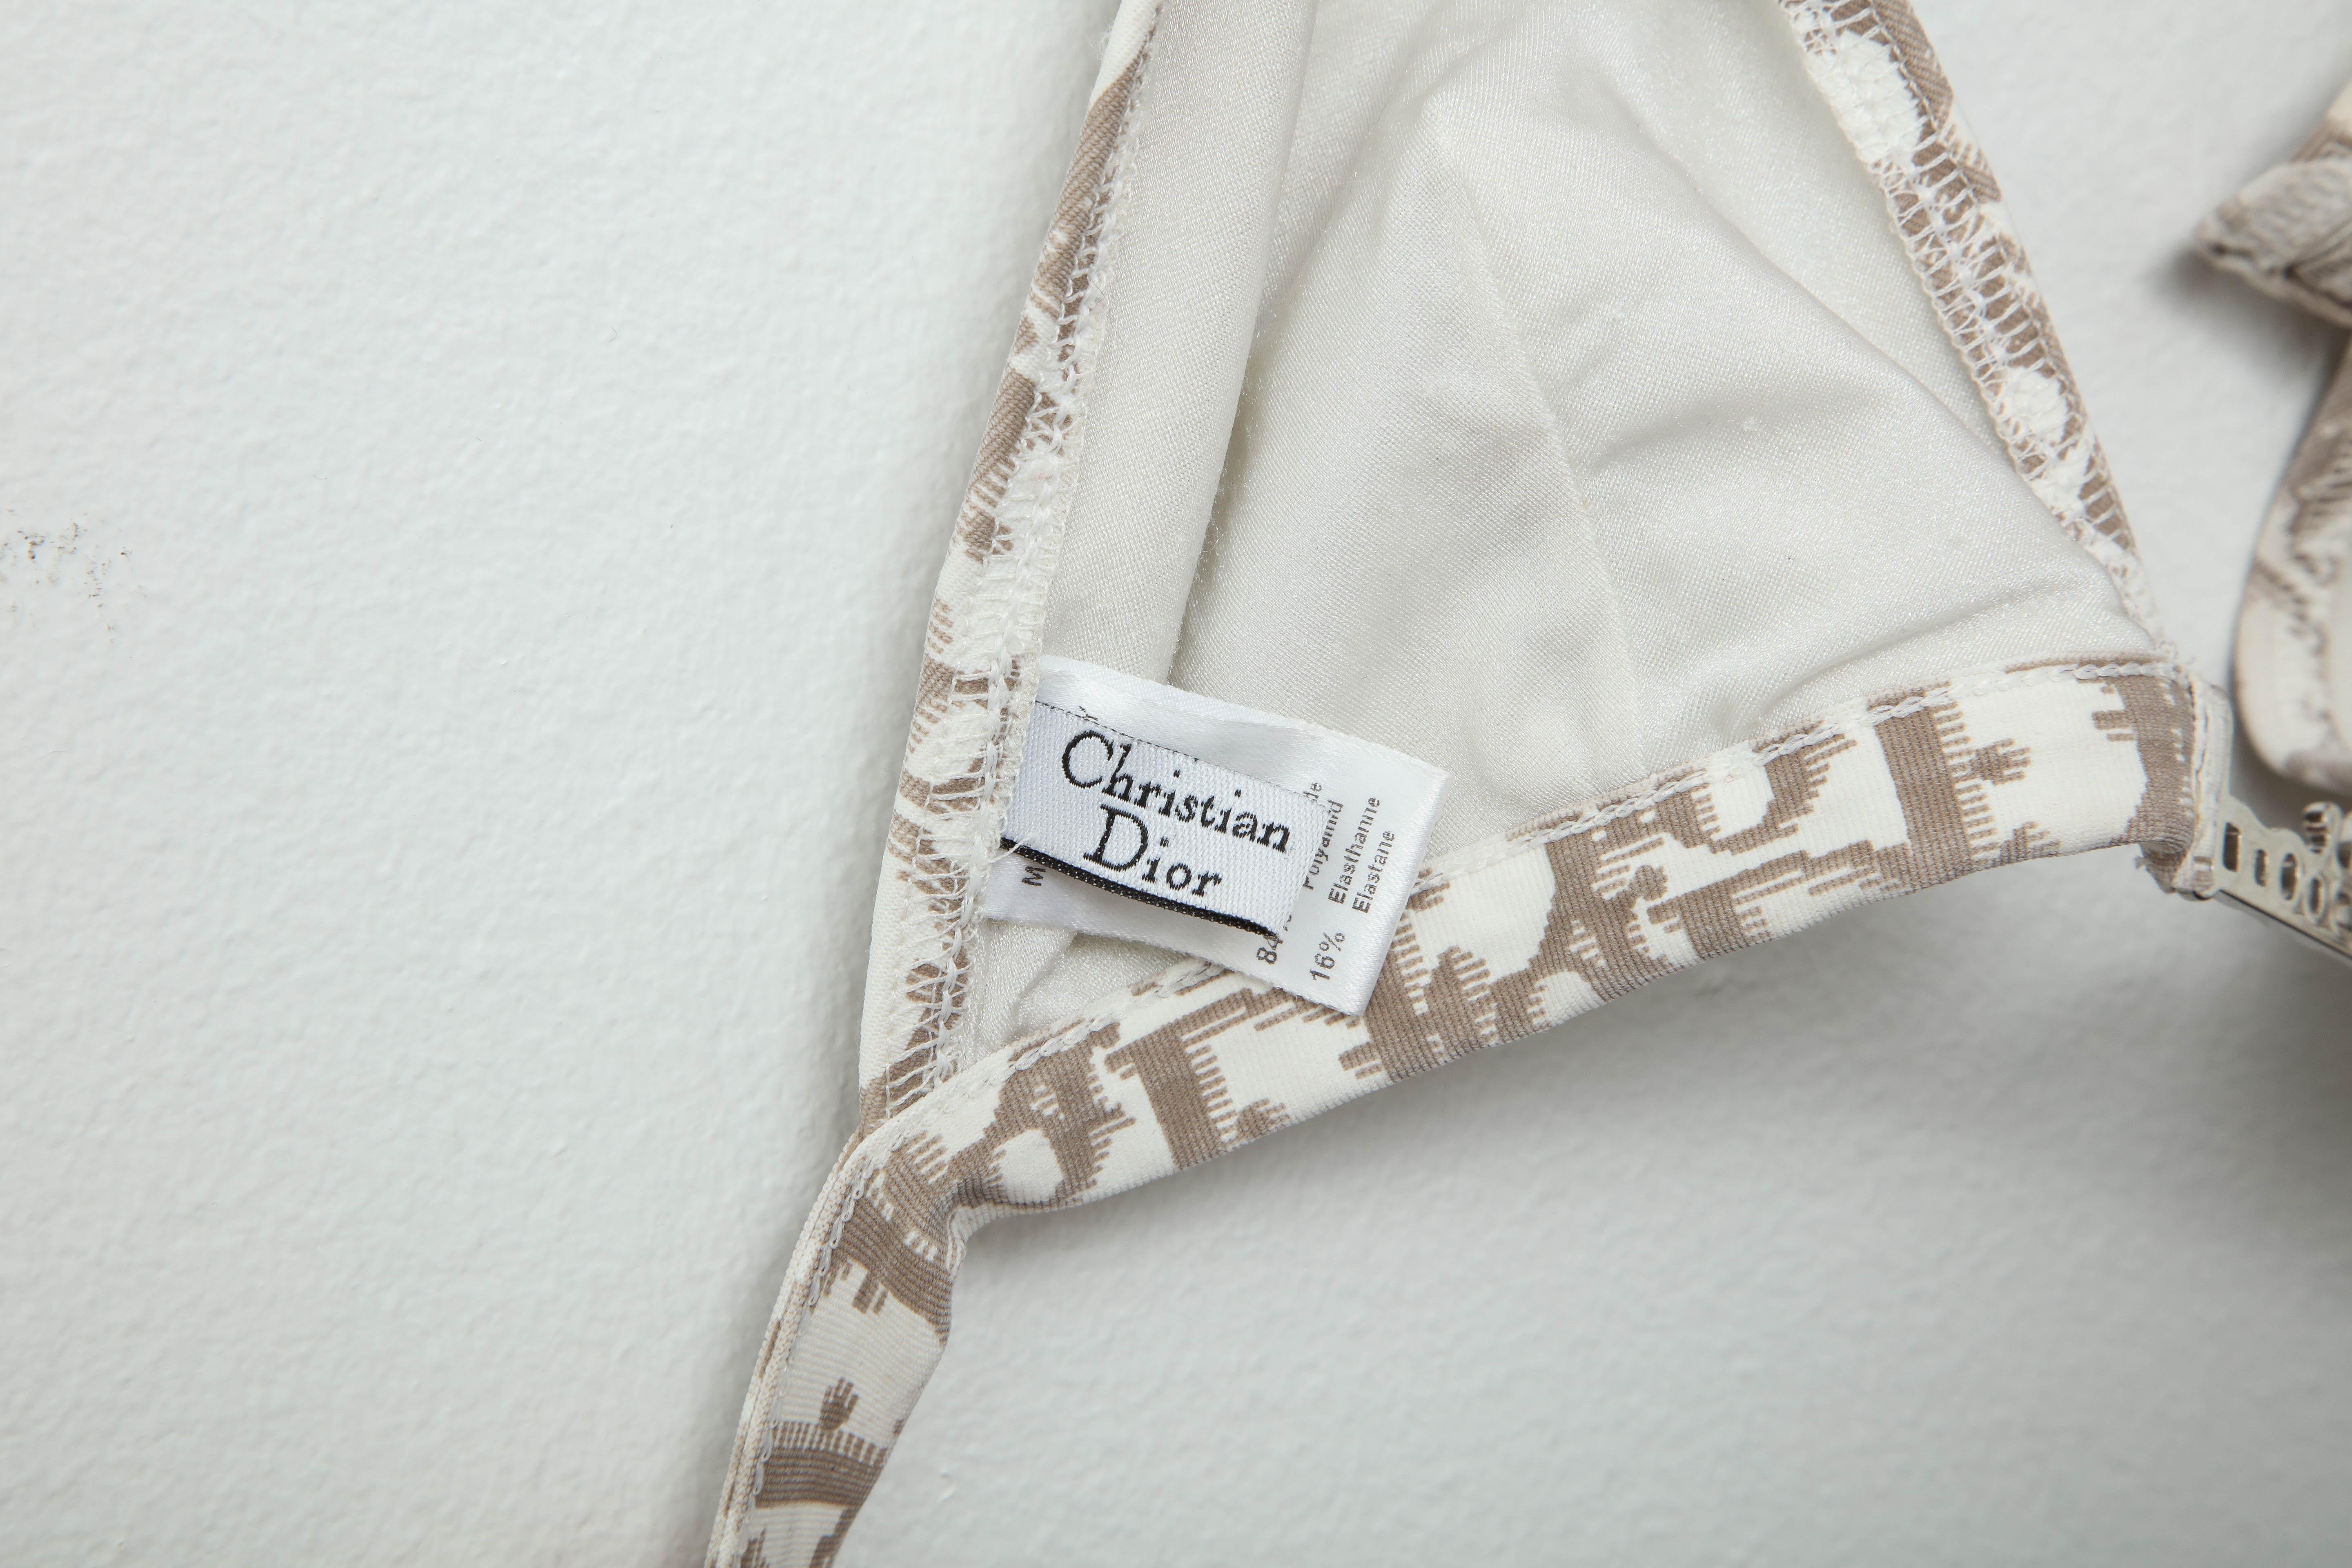 John Galliano for Christian Dior Logo Bikini Top In Good Condition For Sale In Chicago, IL